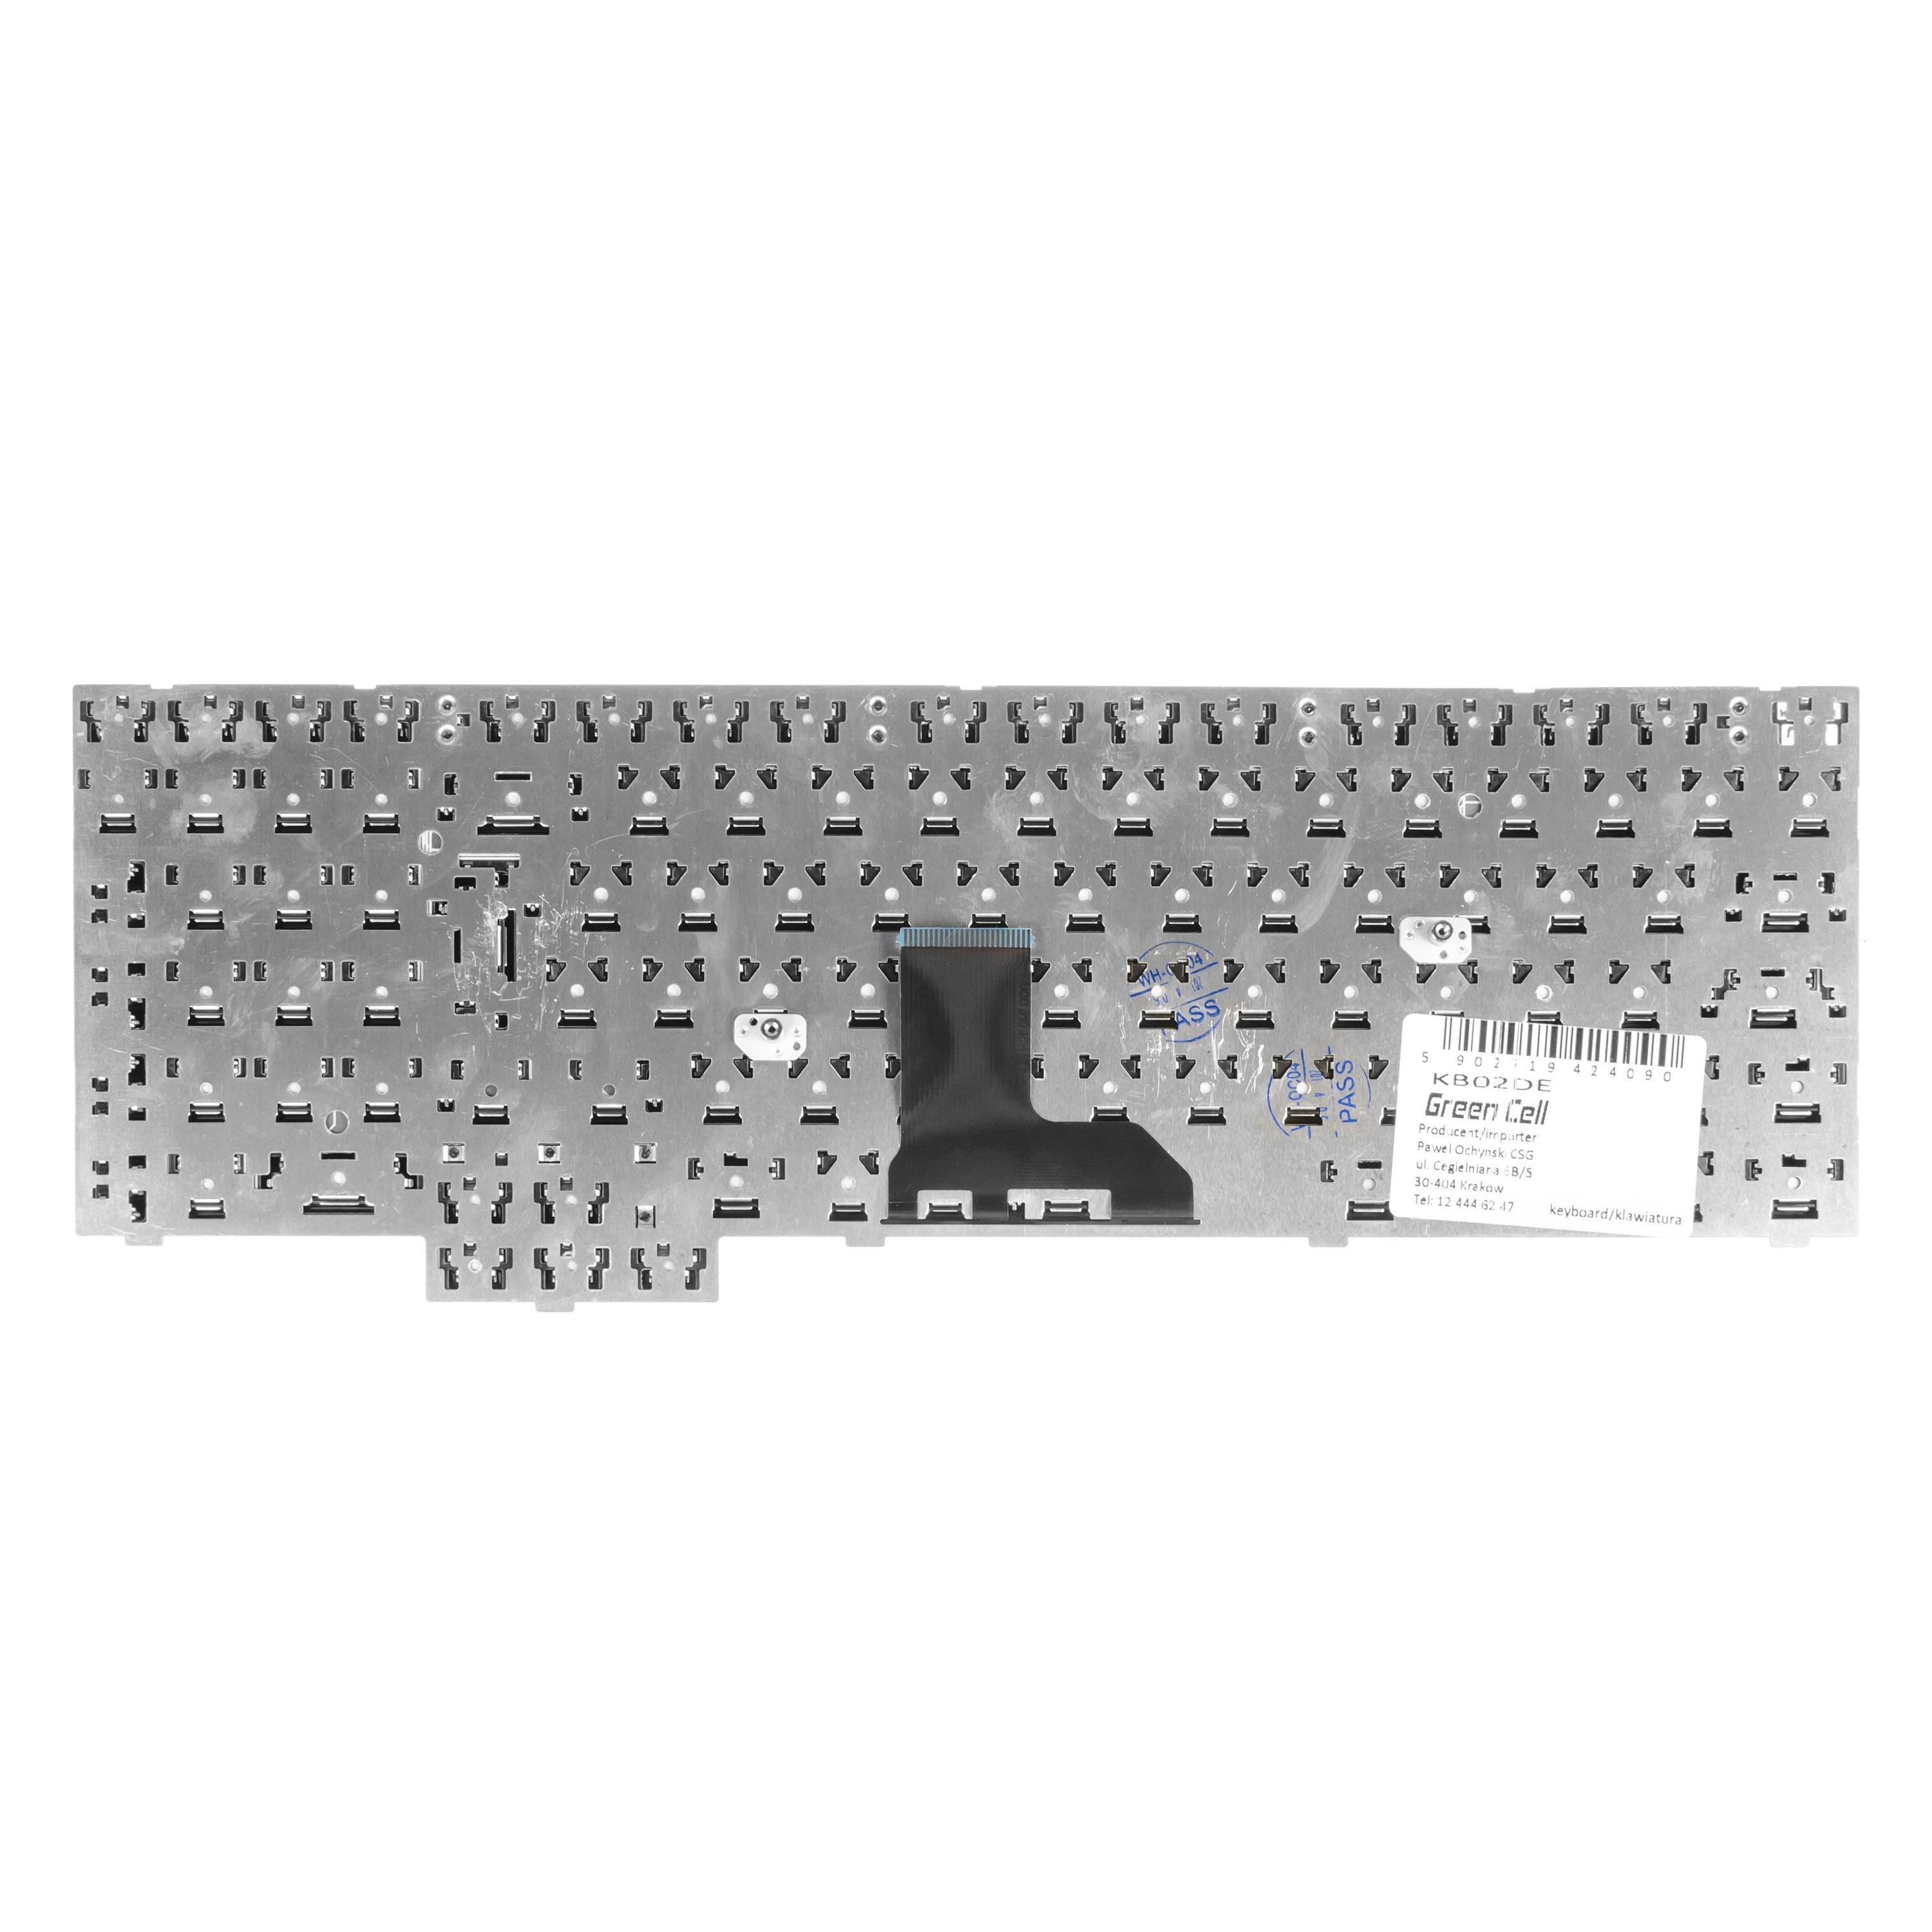 Green Cell German Keyboard for Laptop Samsung R519 R525 R530 R528 R538 R540 R610 R620 R719 RV508 RV510